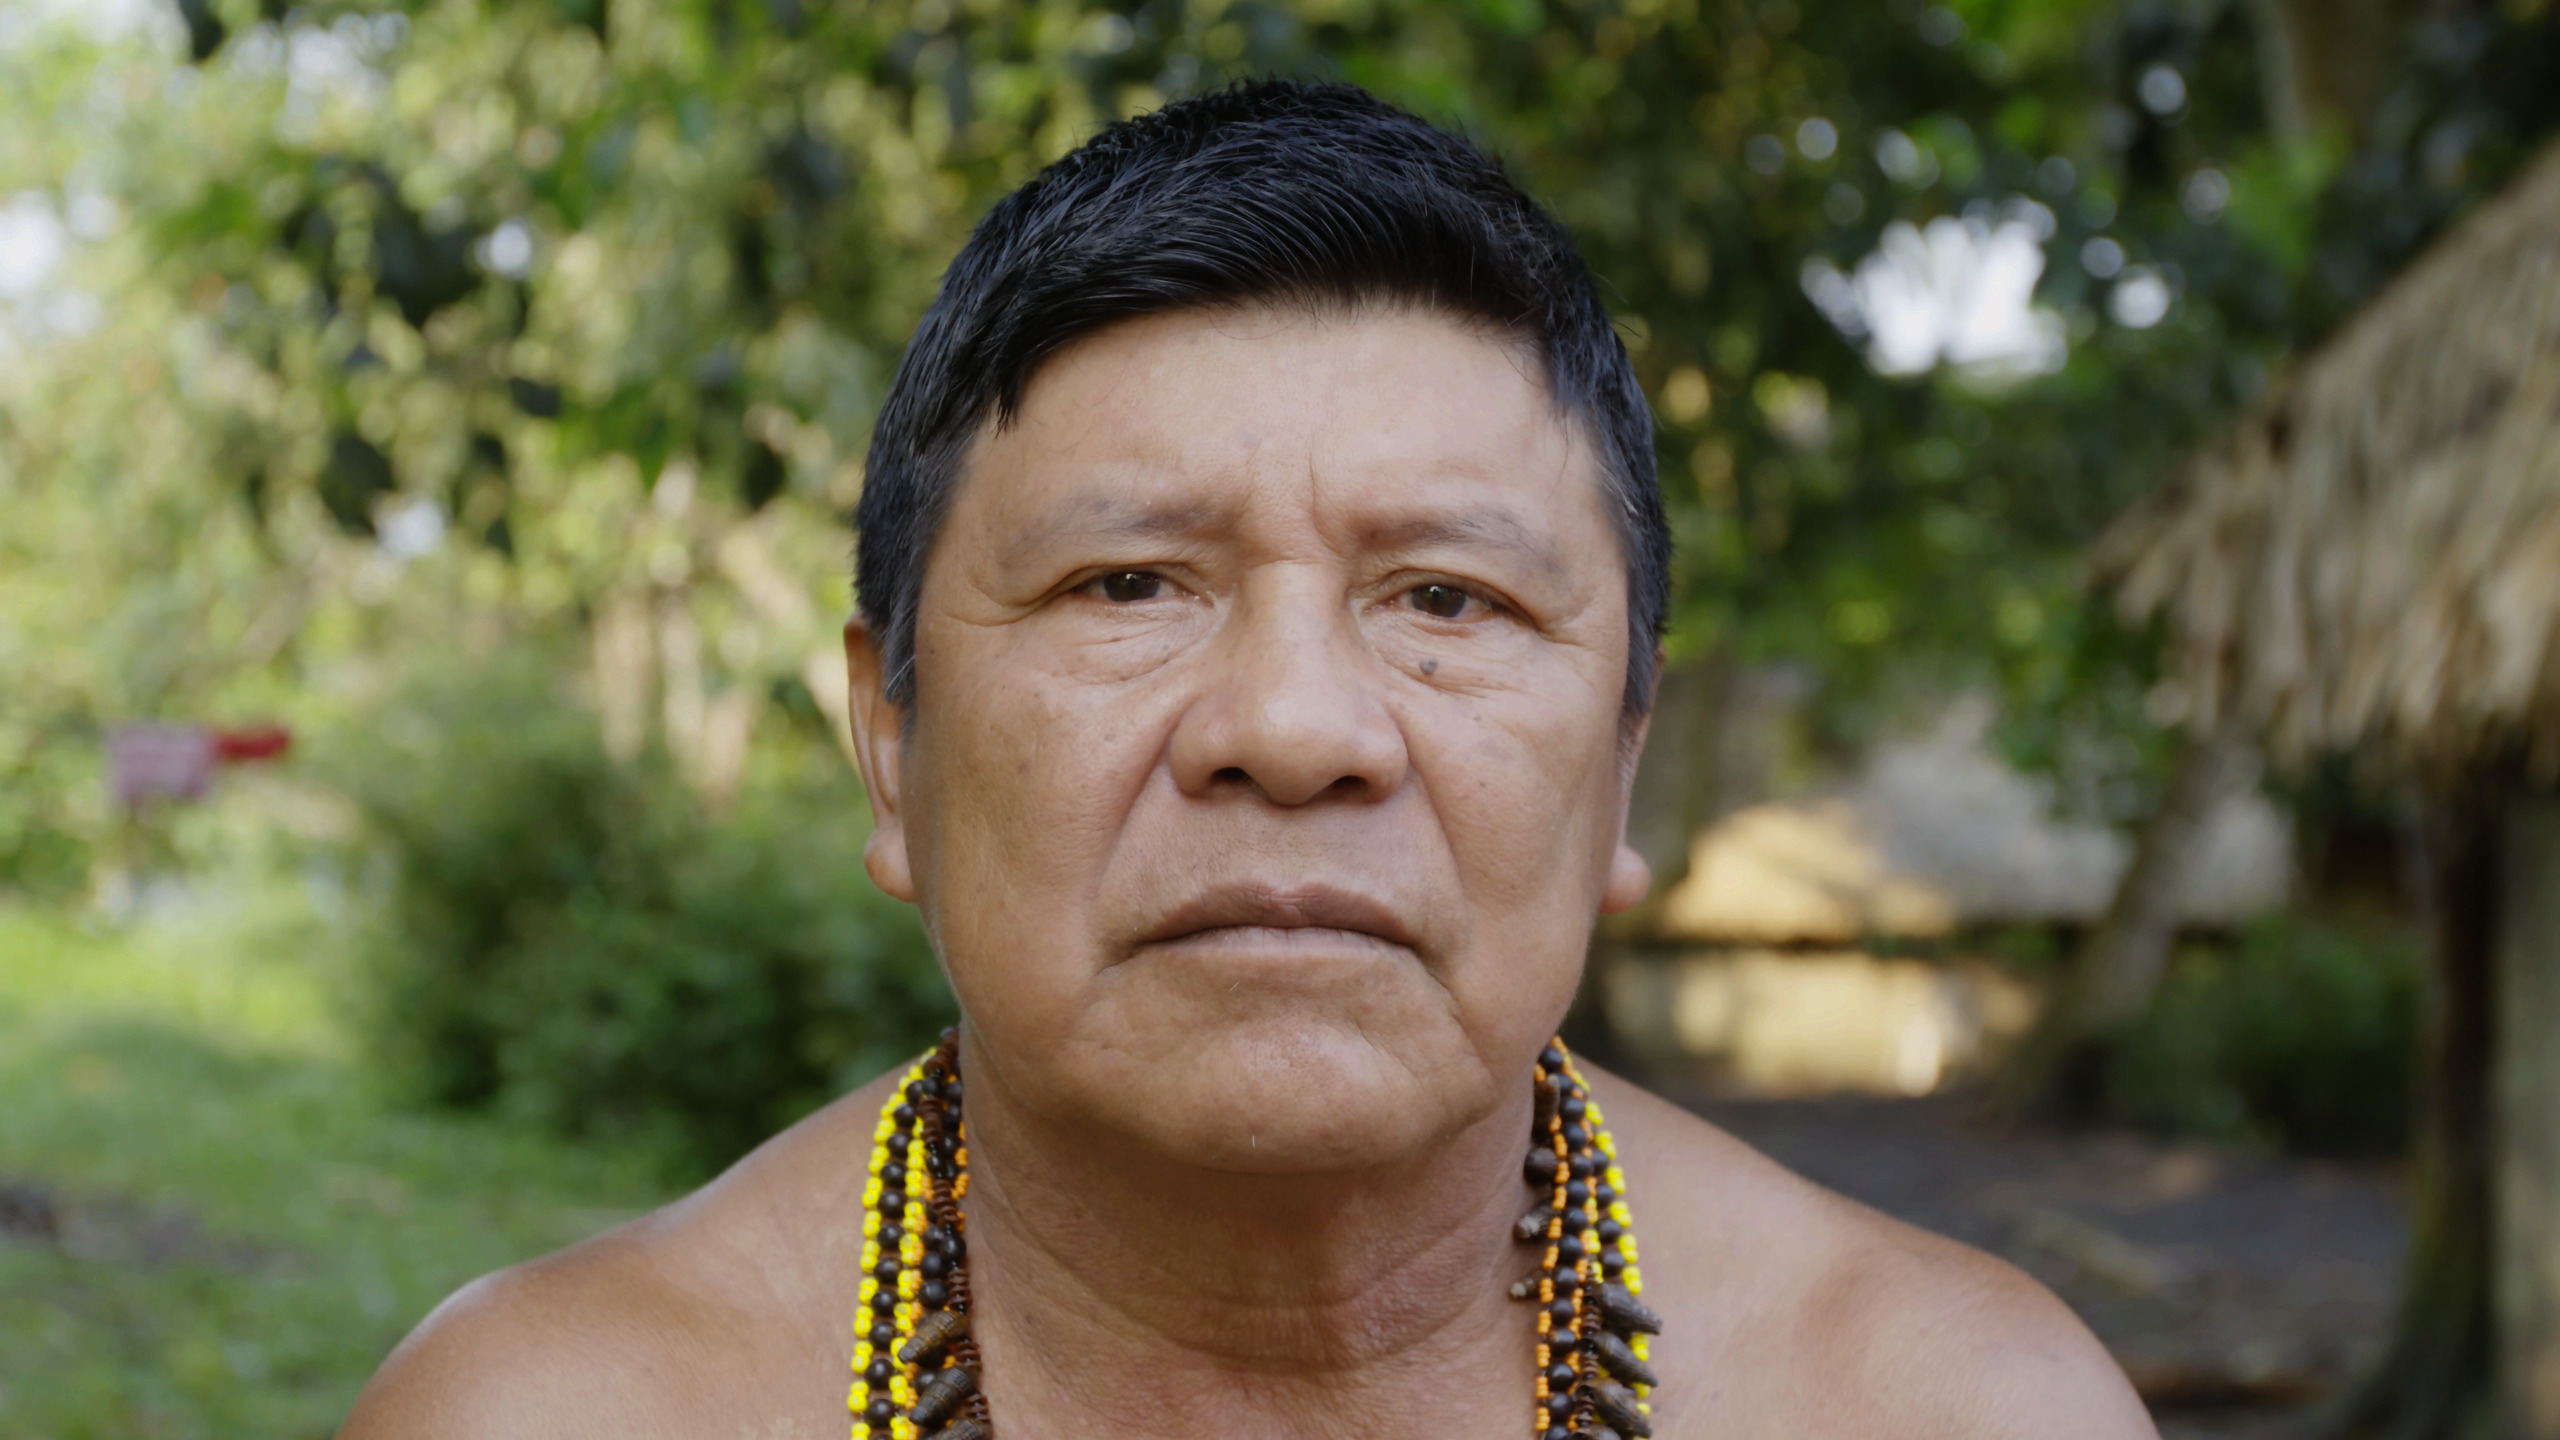 O cacique Jairo Saw, do povo Munduruku, olha diretamente para a câmera. O close mostra seu rosto, o peito nu e os colares coloridos em seu pescoço.